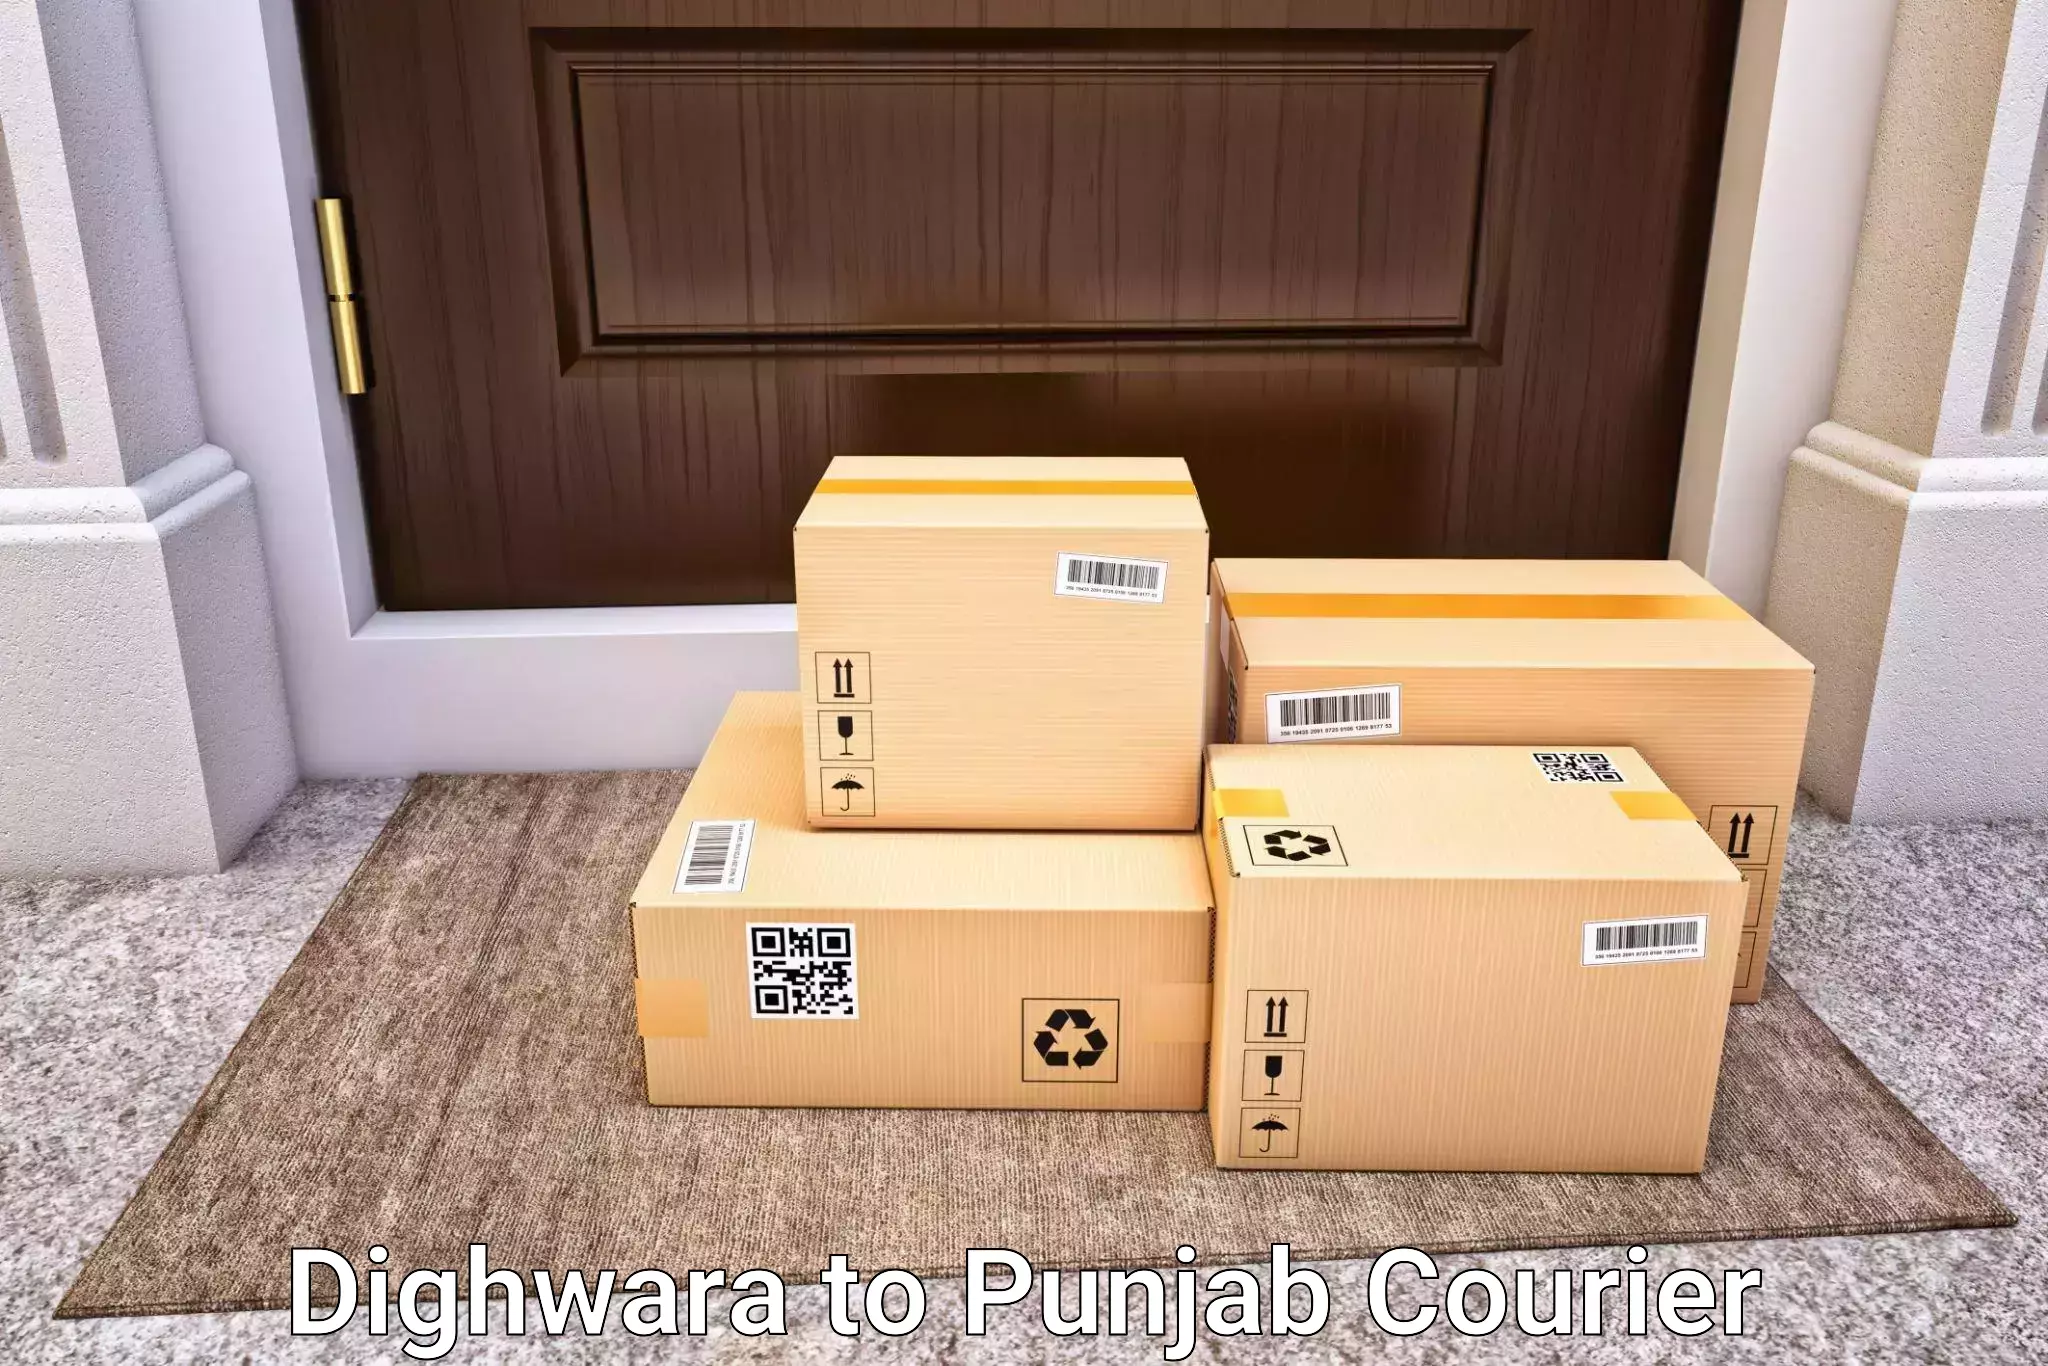 Baggage courier service Dighwara to Zirakpur